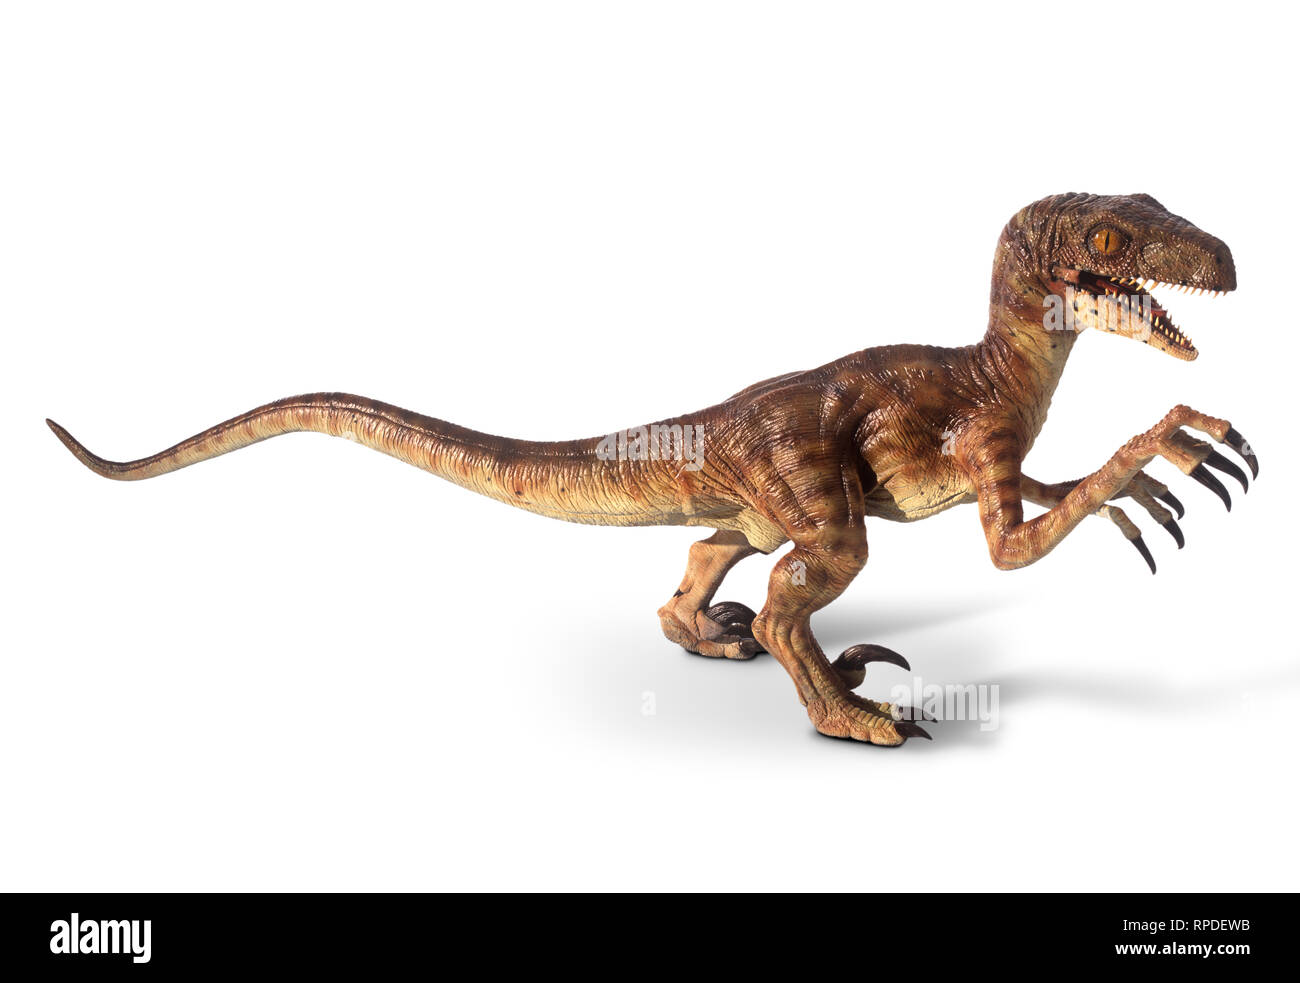 D'un modèle grandeur nature de dinosaures de Jurassic Park pour Disney Pictures du film. Banque D'Images